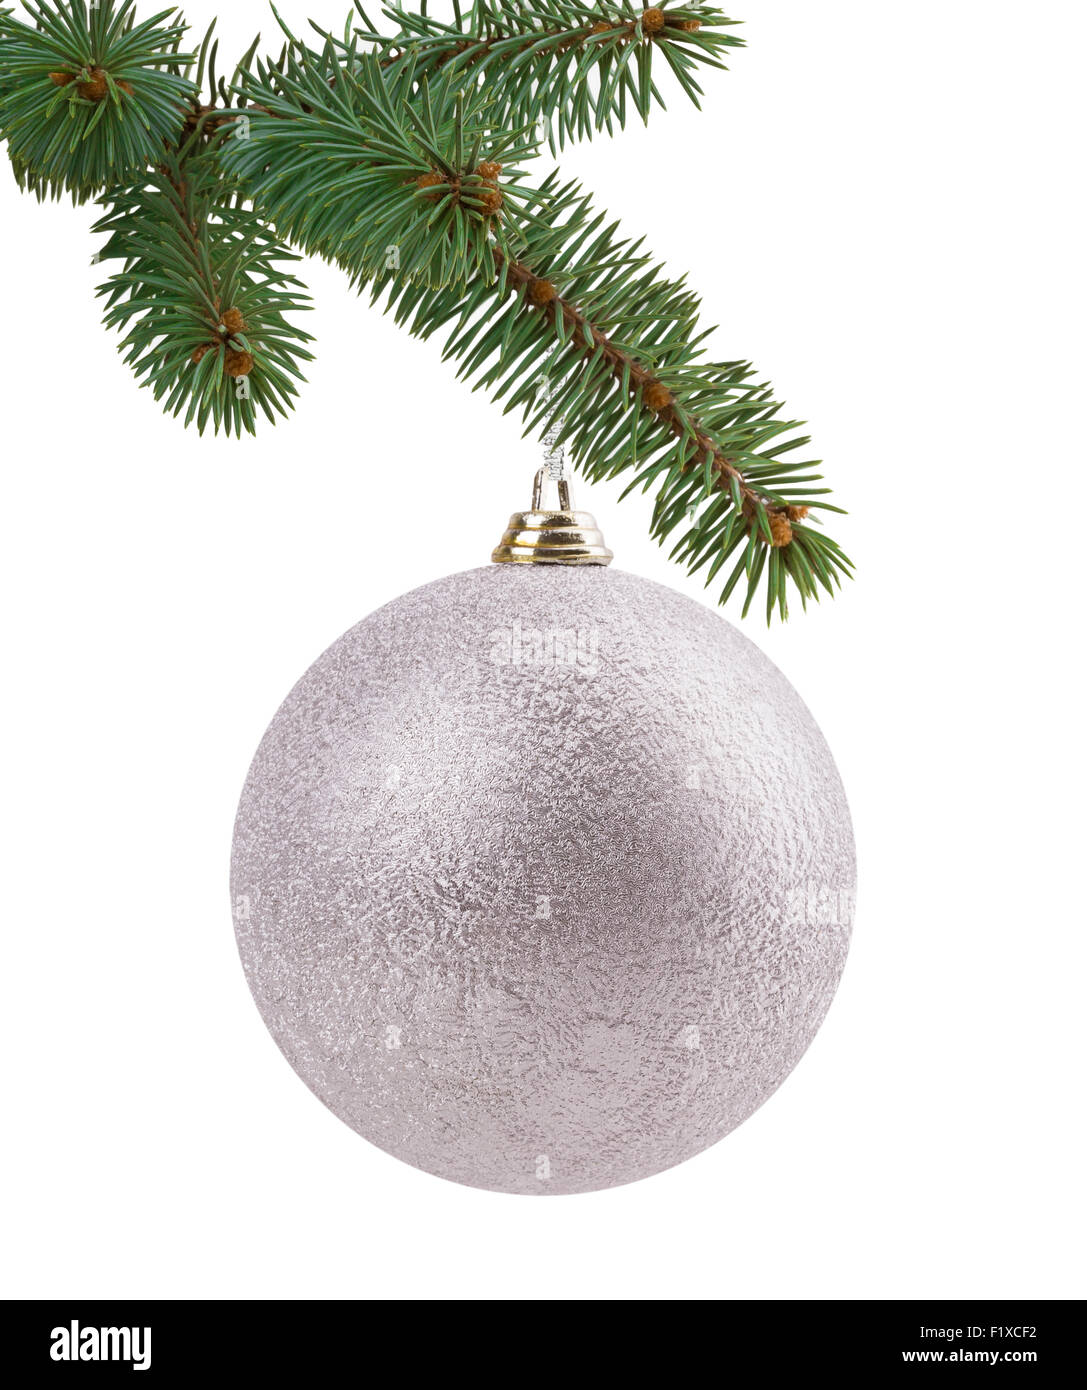 Weihnachtsbaum Zweig mit einem Ball. Stockfoto